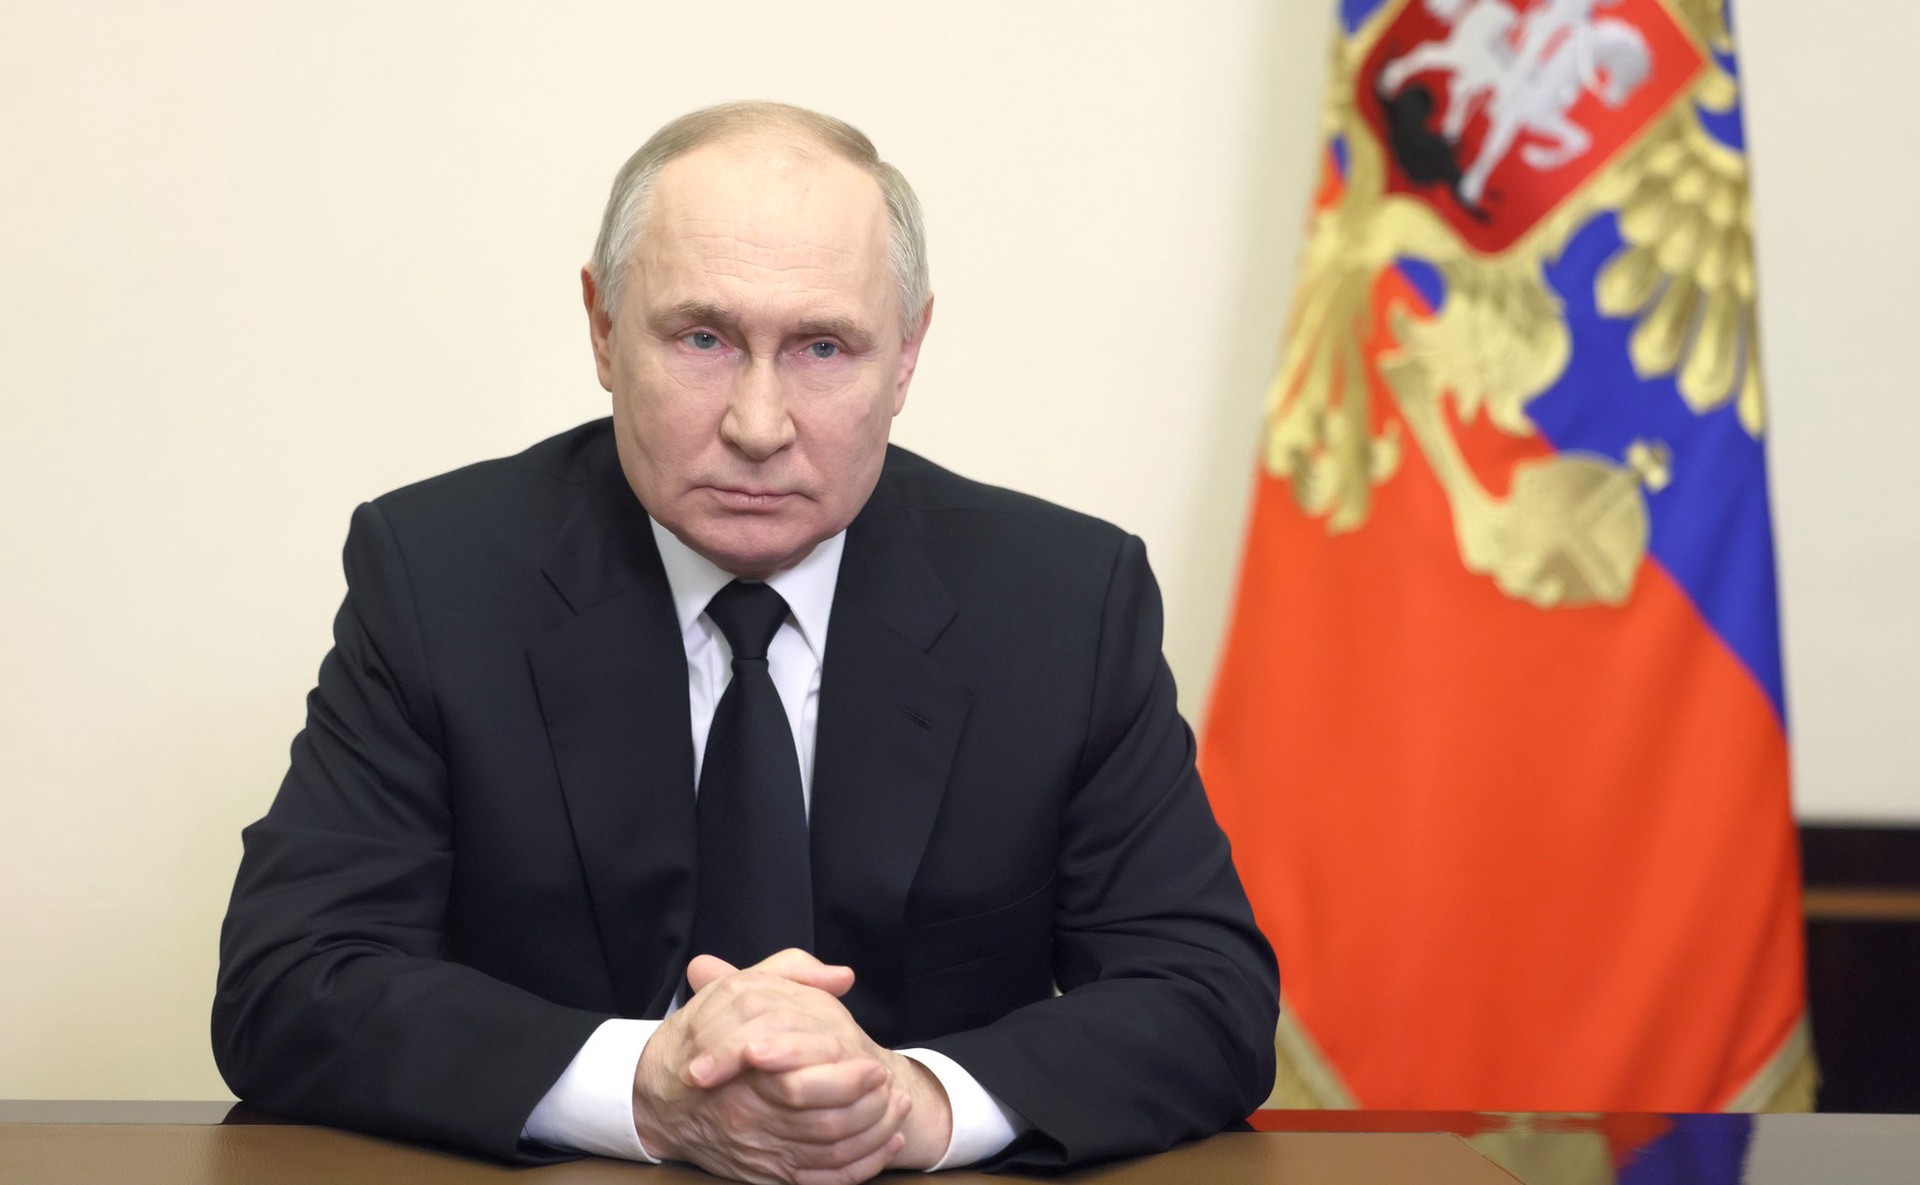 Кремль сообщит, если у Путина в ближайшие дни будет Совбез по теме теракта в Подмосковье